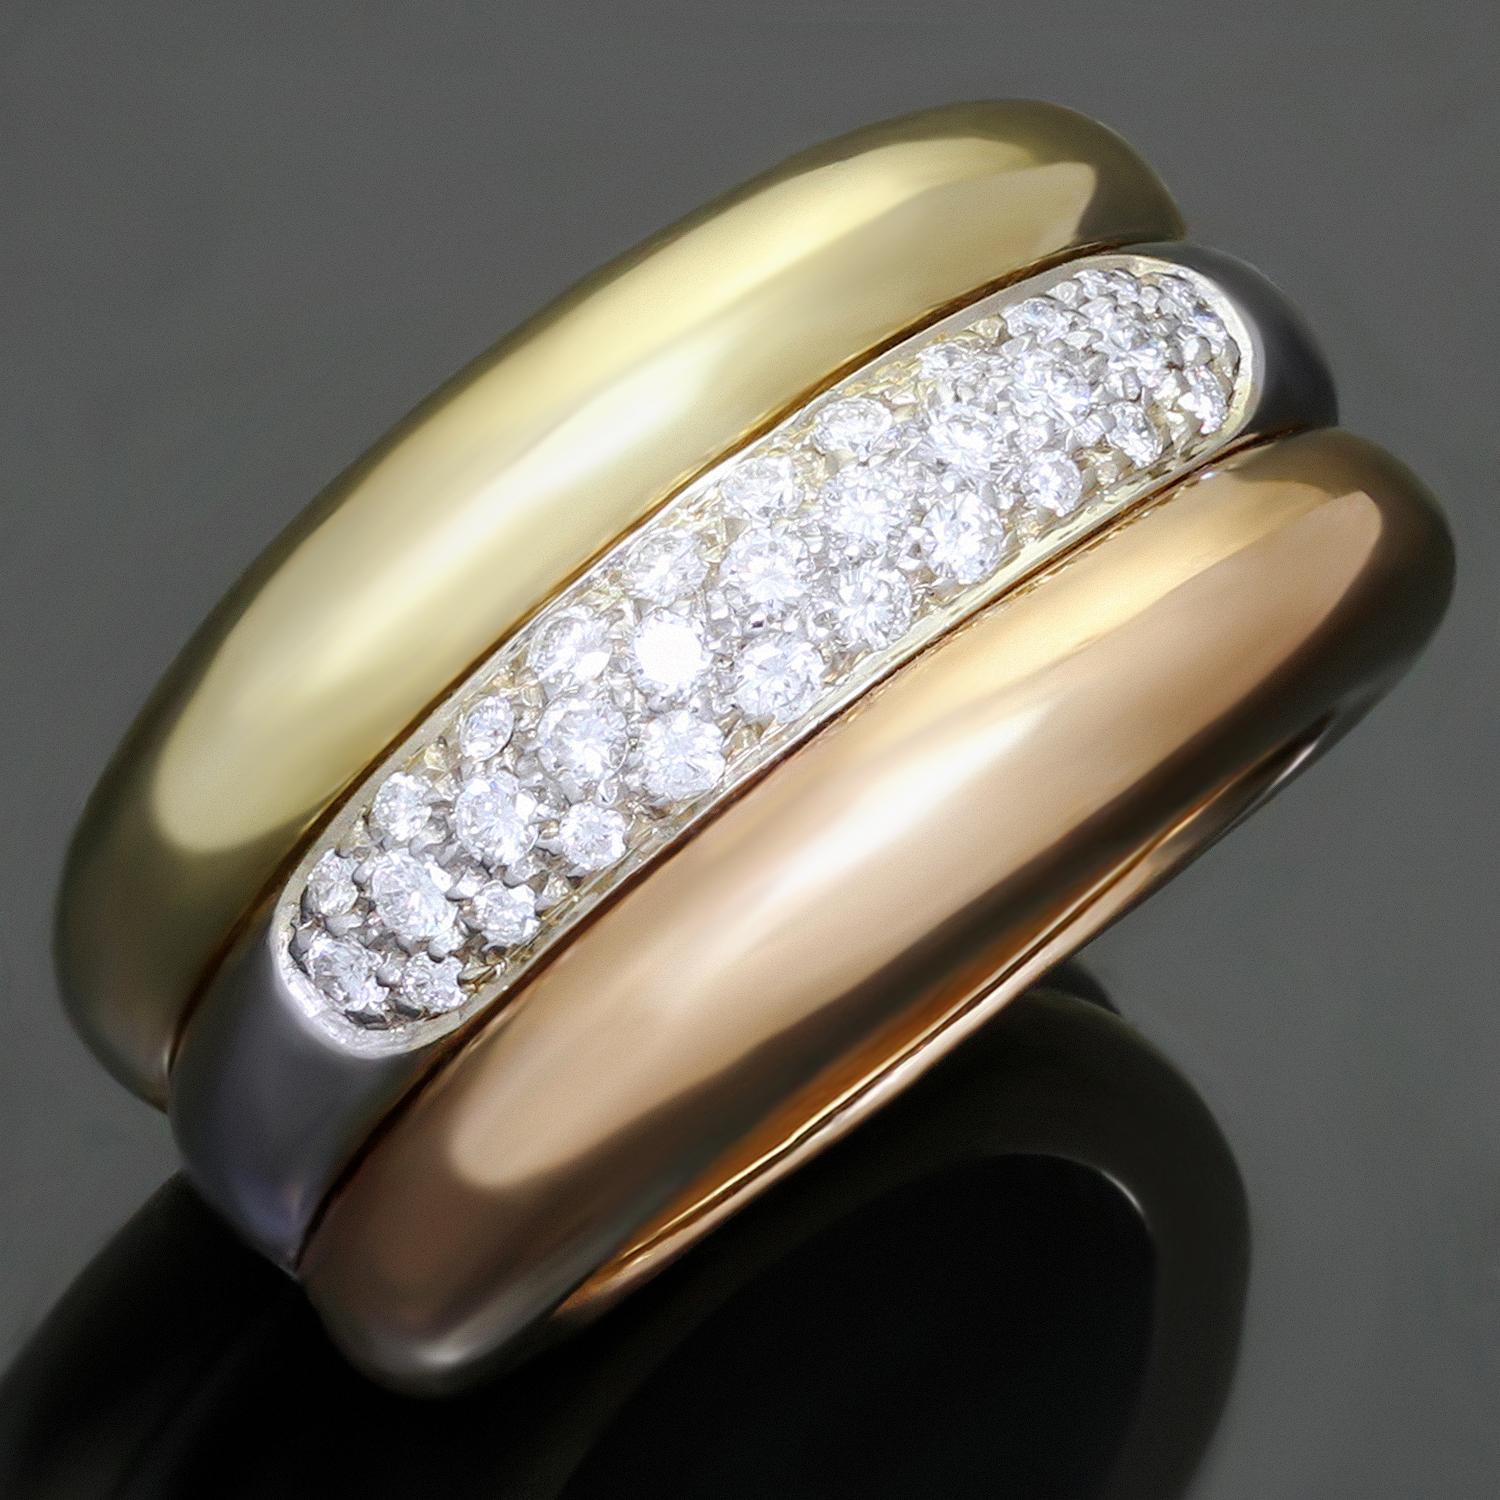 Dieser wunderschöne gewölbte Ring aus der Trinity-Kollektion von Cartier ist aus 18 Karat Gelb-, Weiß- und Roségold gefertigt und mit runden Diamanten im Brillantschliff (F-G VVS1-VVS2) mit einem geschätzten Gesamtgewicht von 0,67 Karat in Weißgold